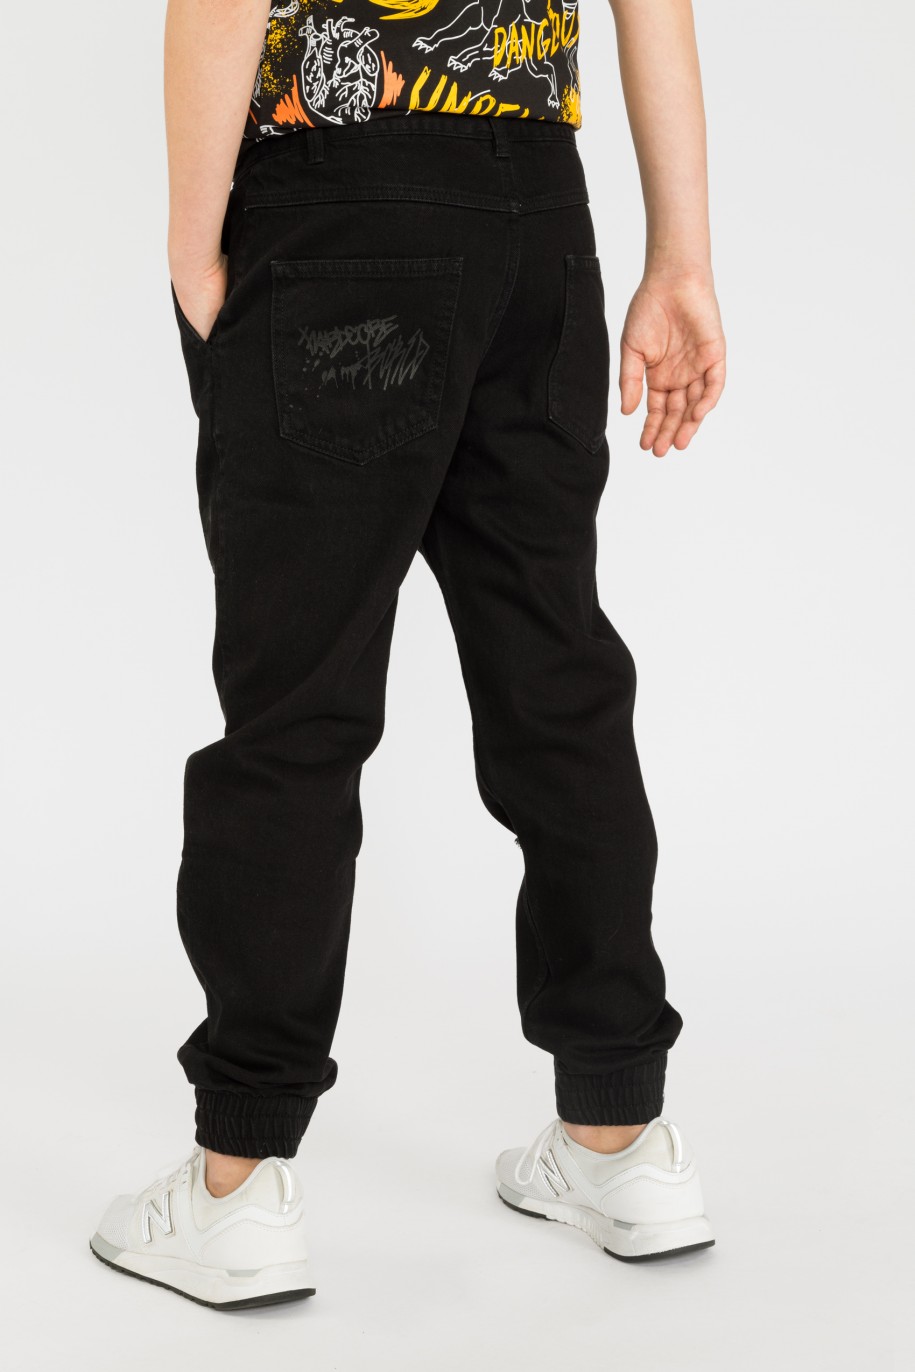 Czarne jeansy typu jogger z nadrukami dla chłopaka - 33461